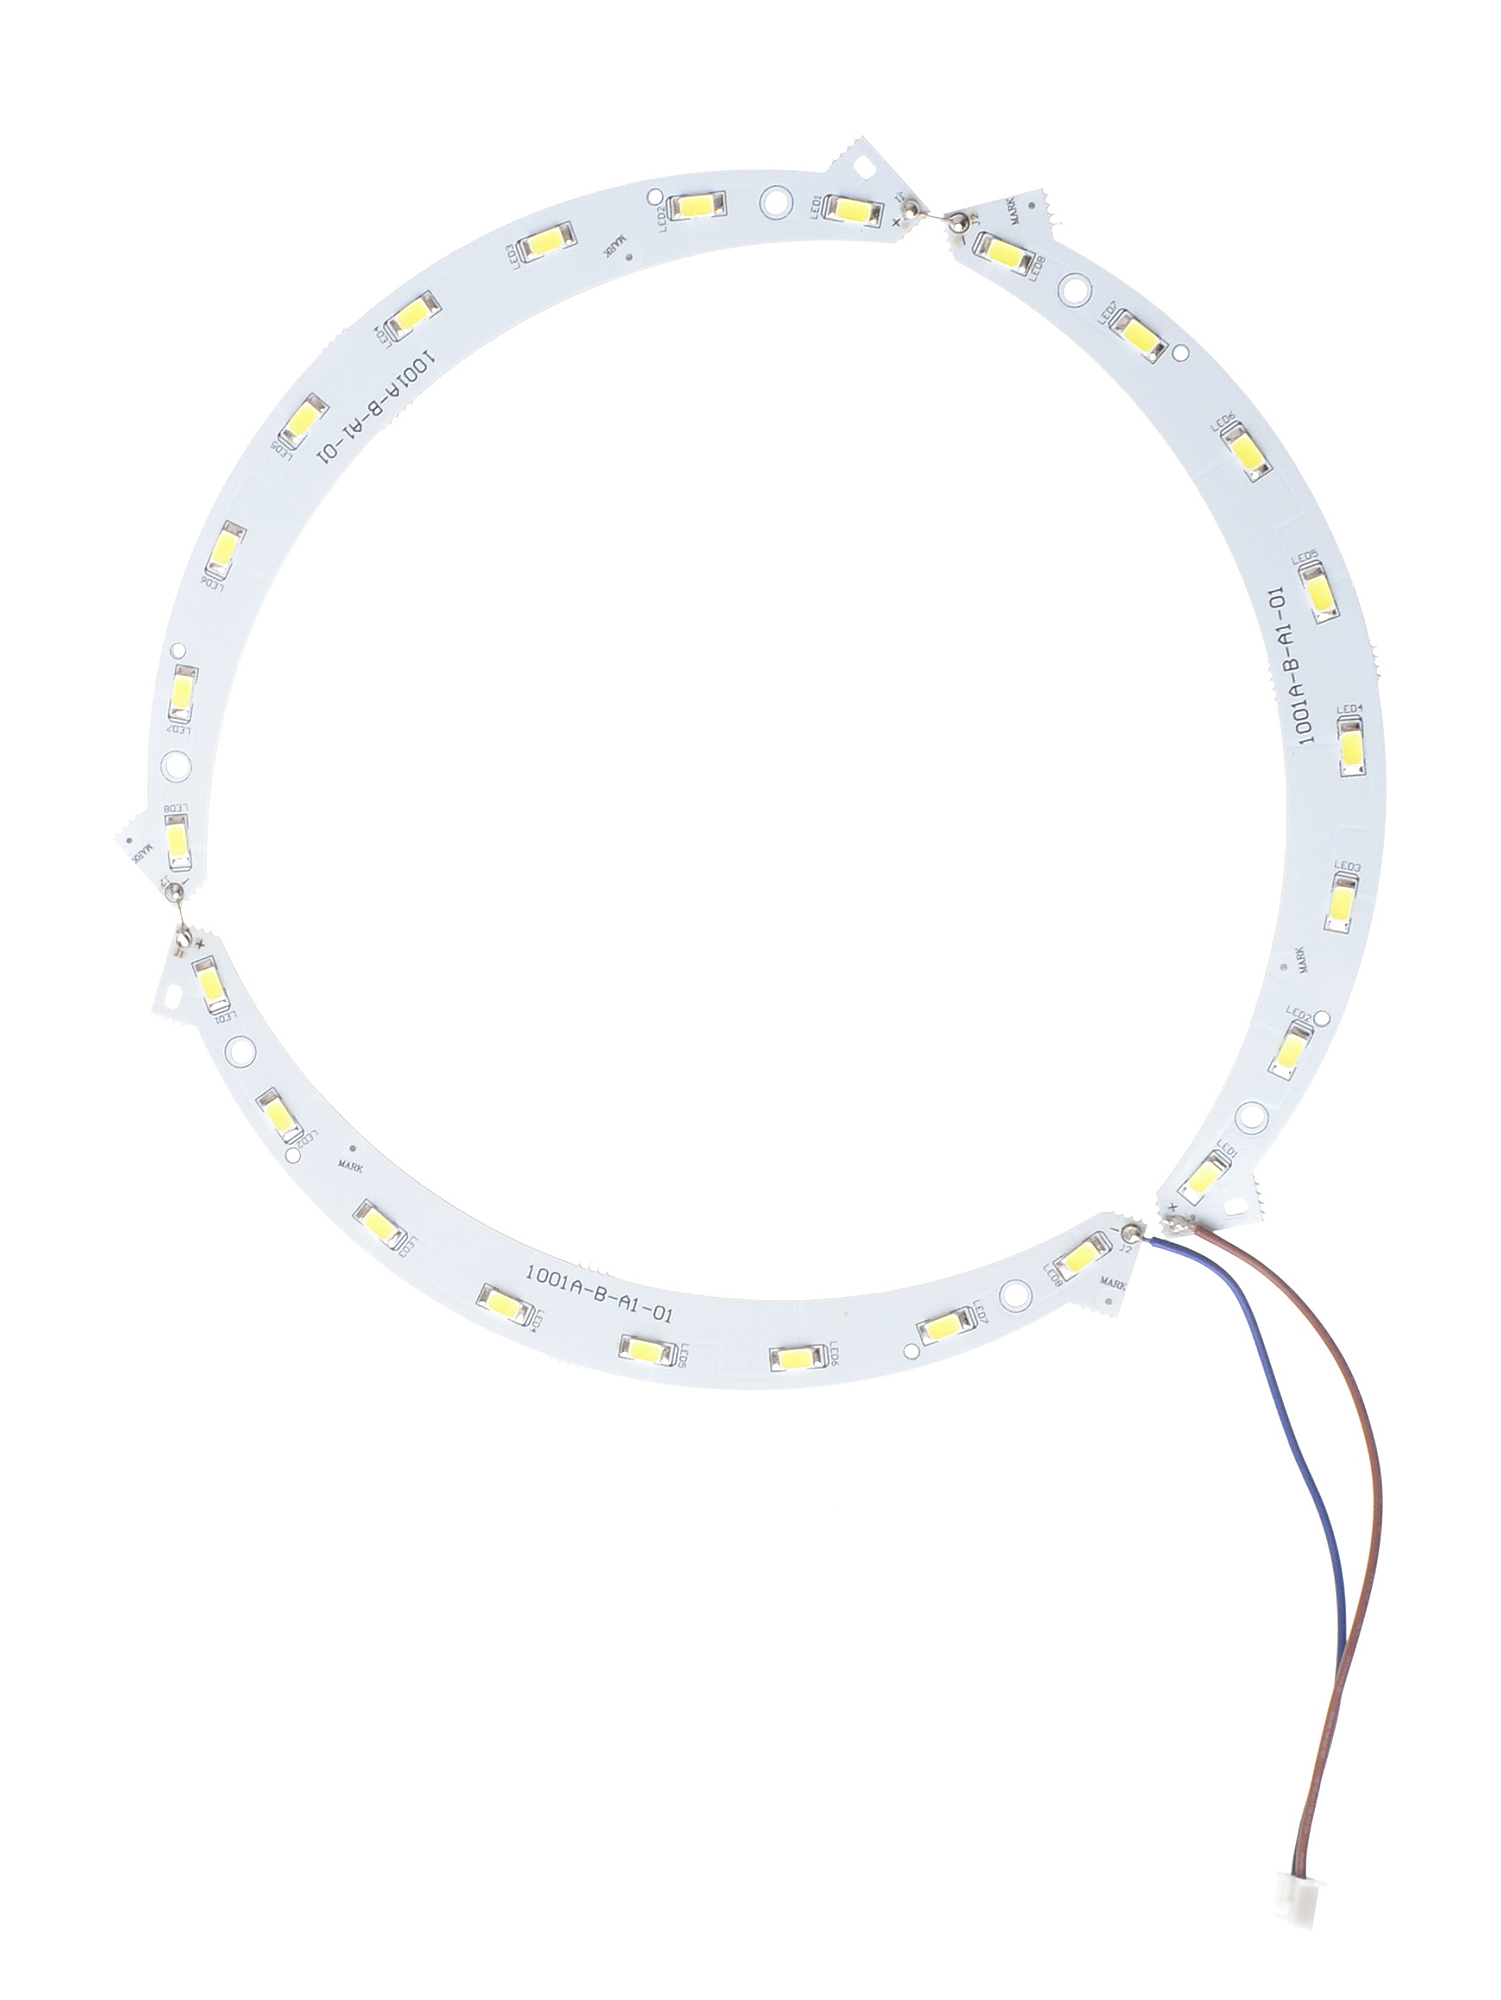 Náhradní LED žárovka pro lampu Weelko 1006 (50065.1) + DÁREK ZDARMA